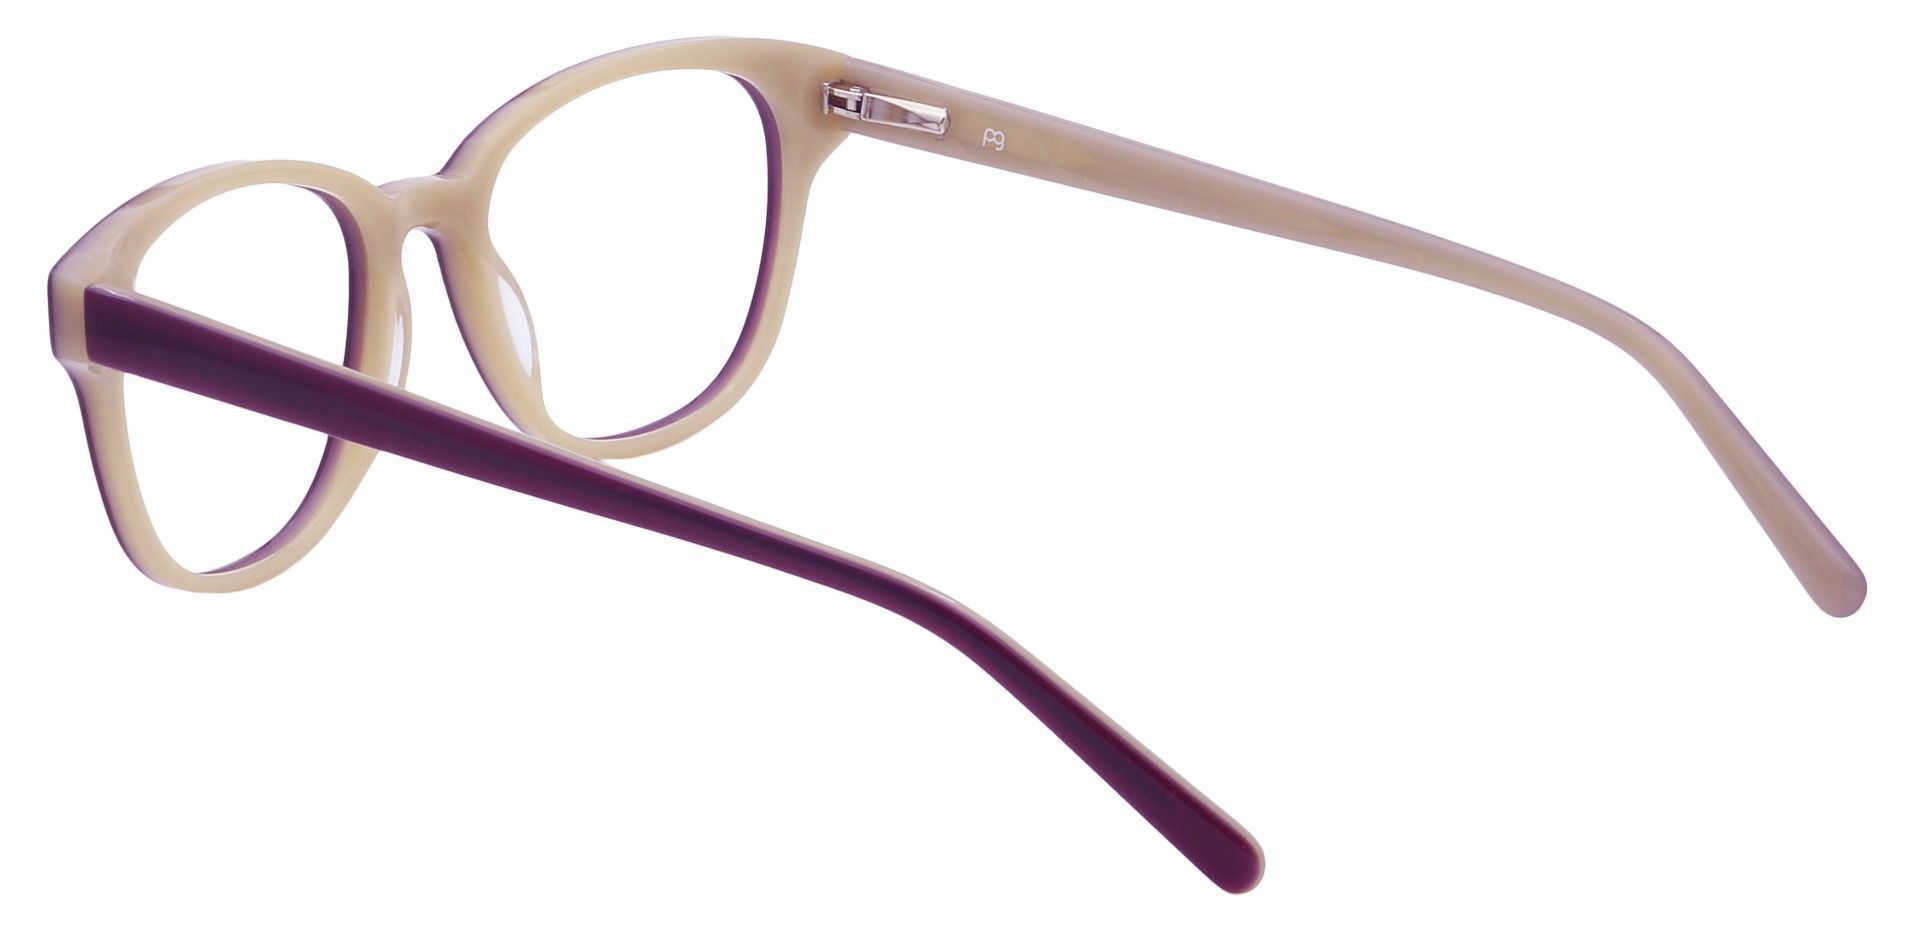 Elan Classic Square Non-Rx Glasses - Purple